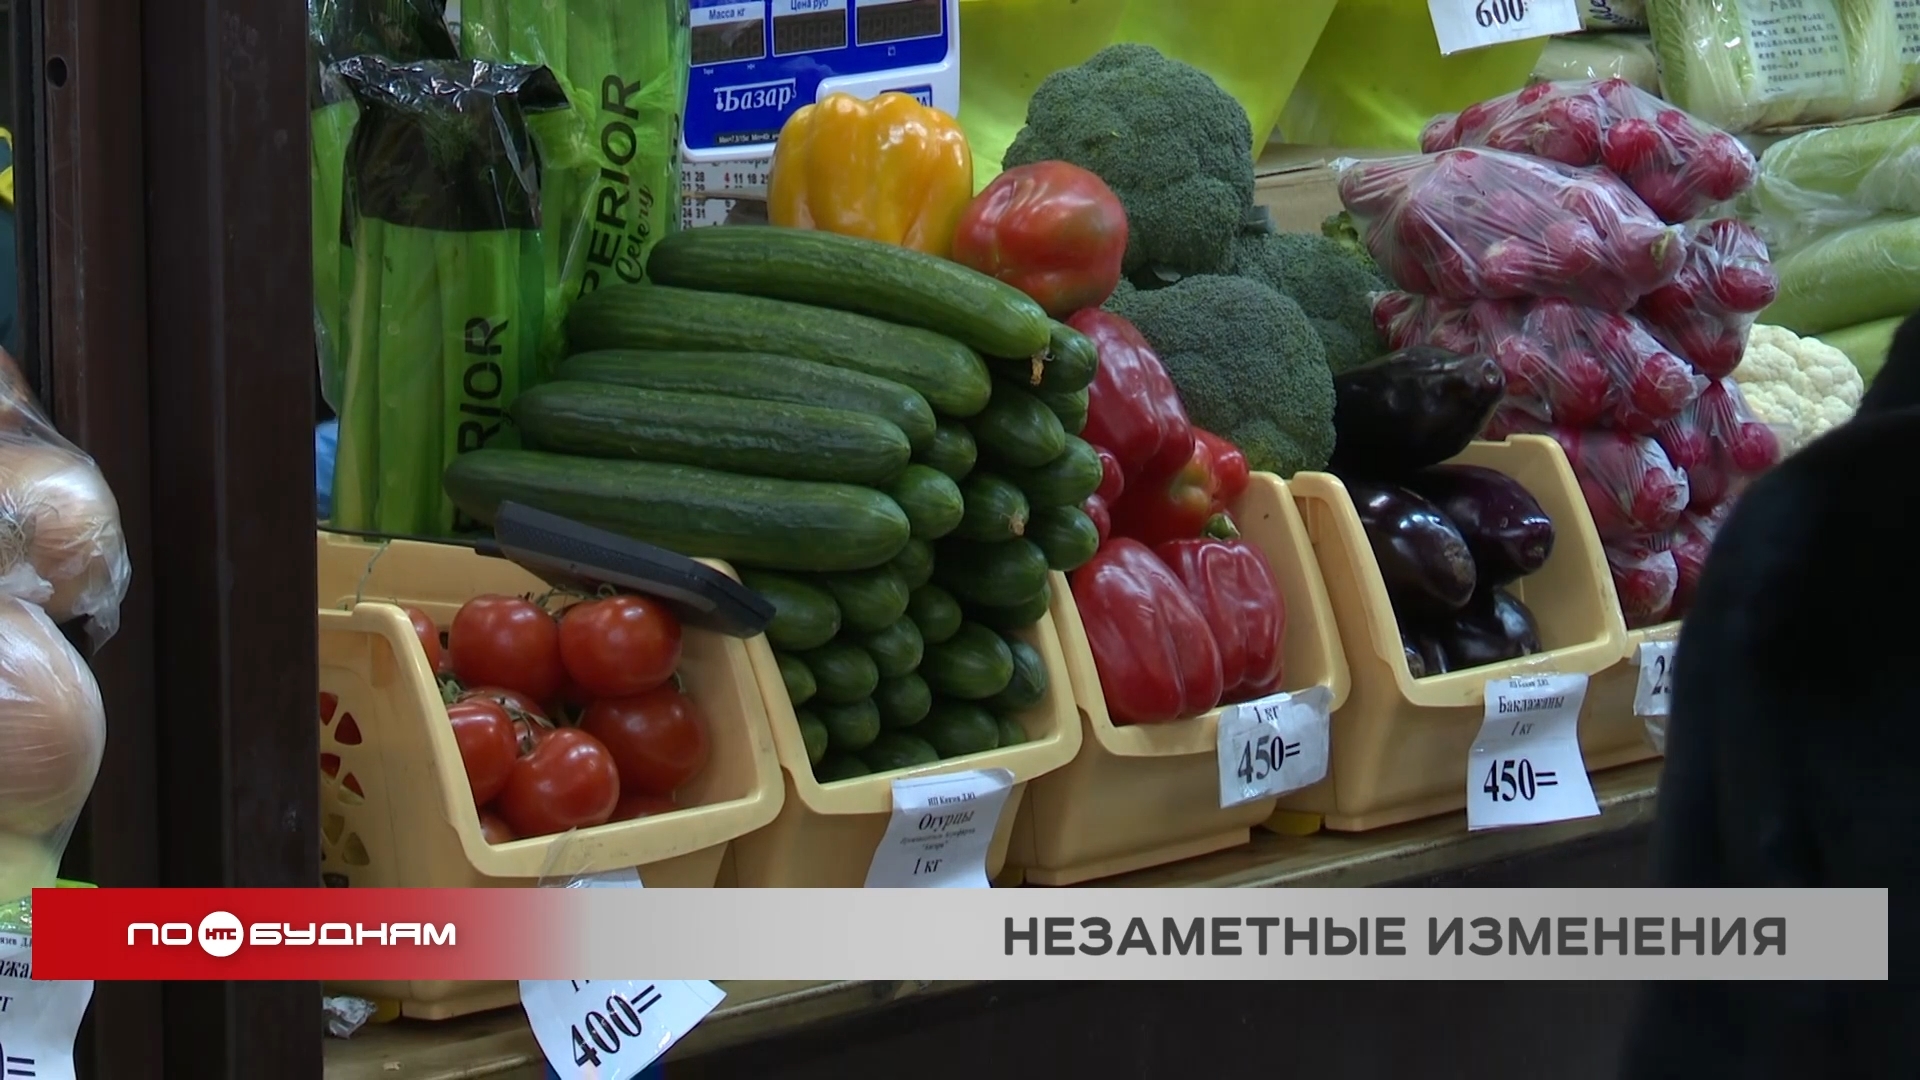 Никто не заметил? или Впервые за год уровень инфляции снизился в Иркутской области